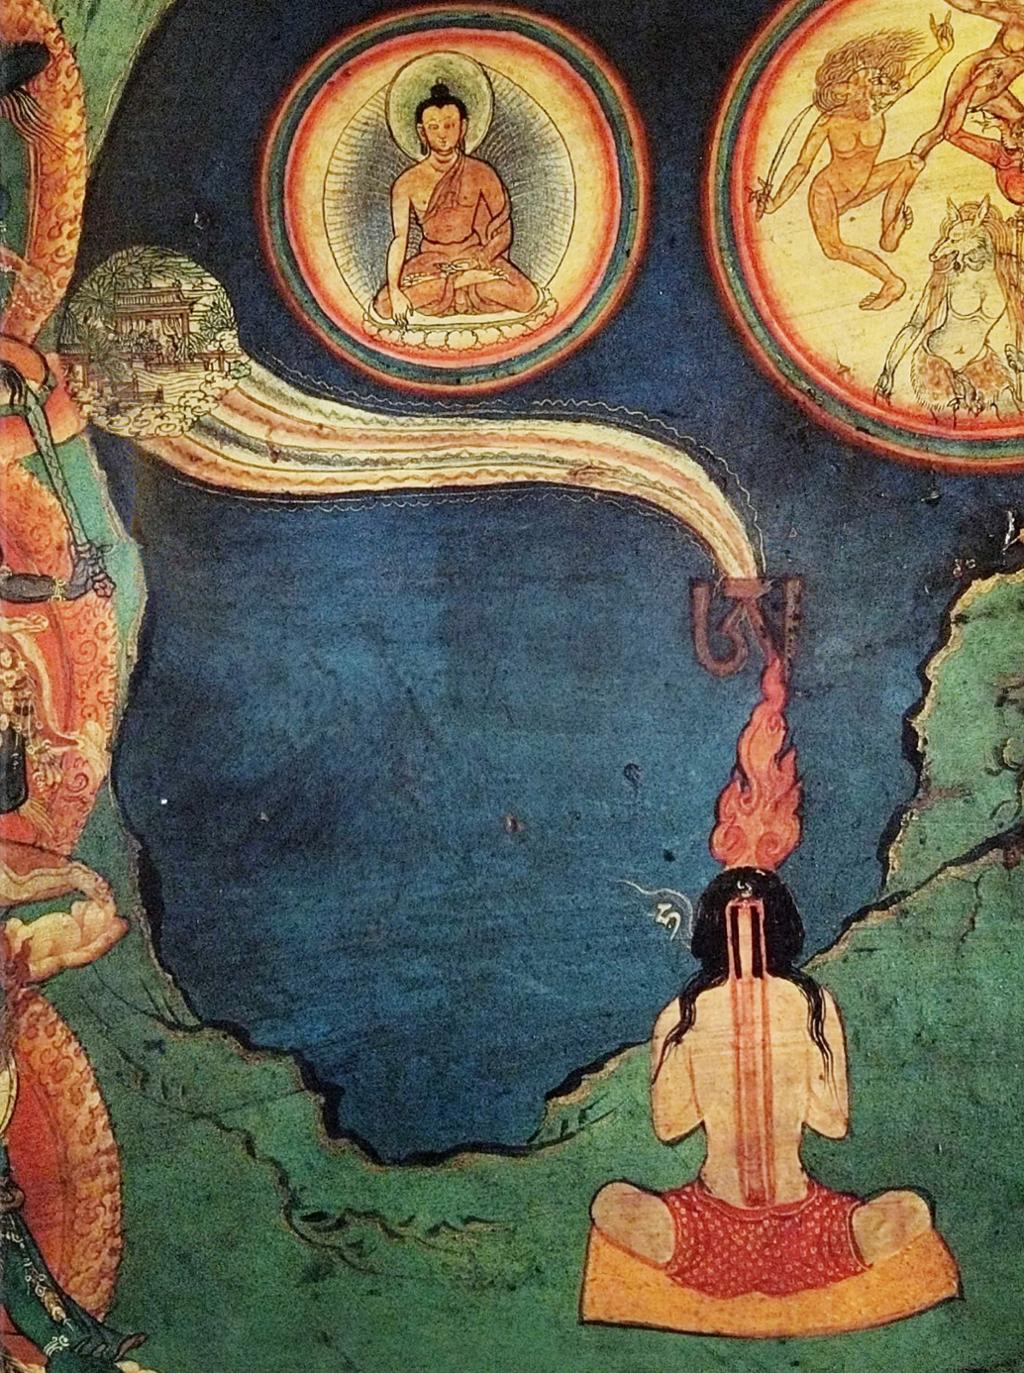 Mann mediterer vend mot eit bilete av Buddha på himmelen. Flammar og symbol stig frå hovudet hans. Oppe til høgre er det ulike mytiske figurar. Måleri.